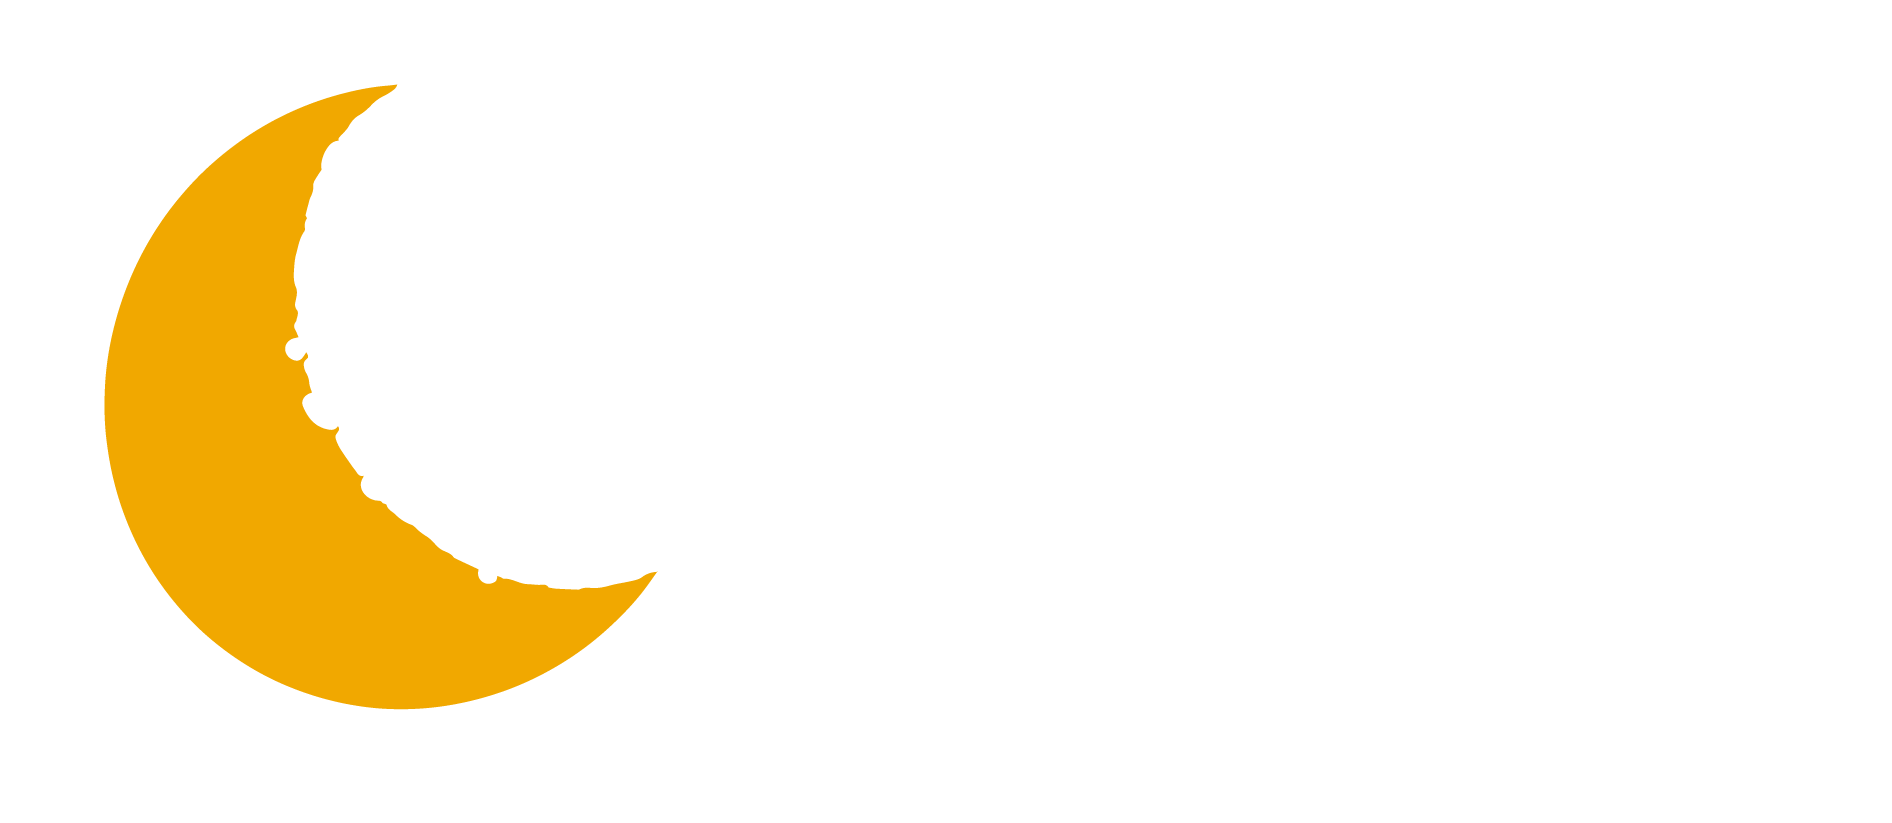 Geordie theatre